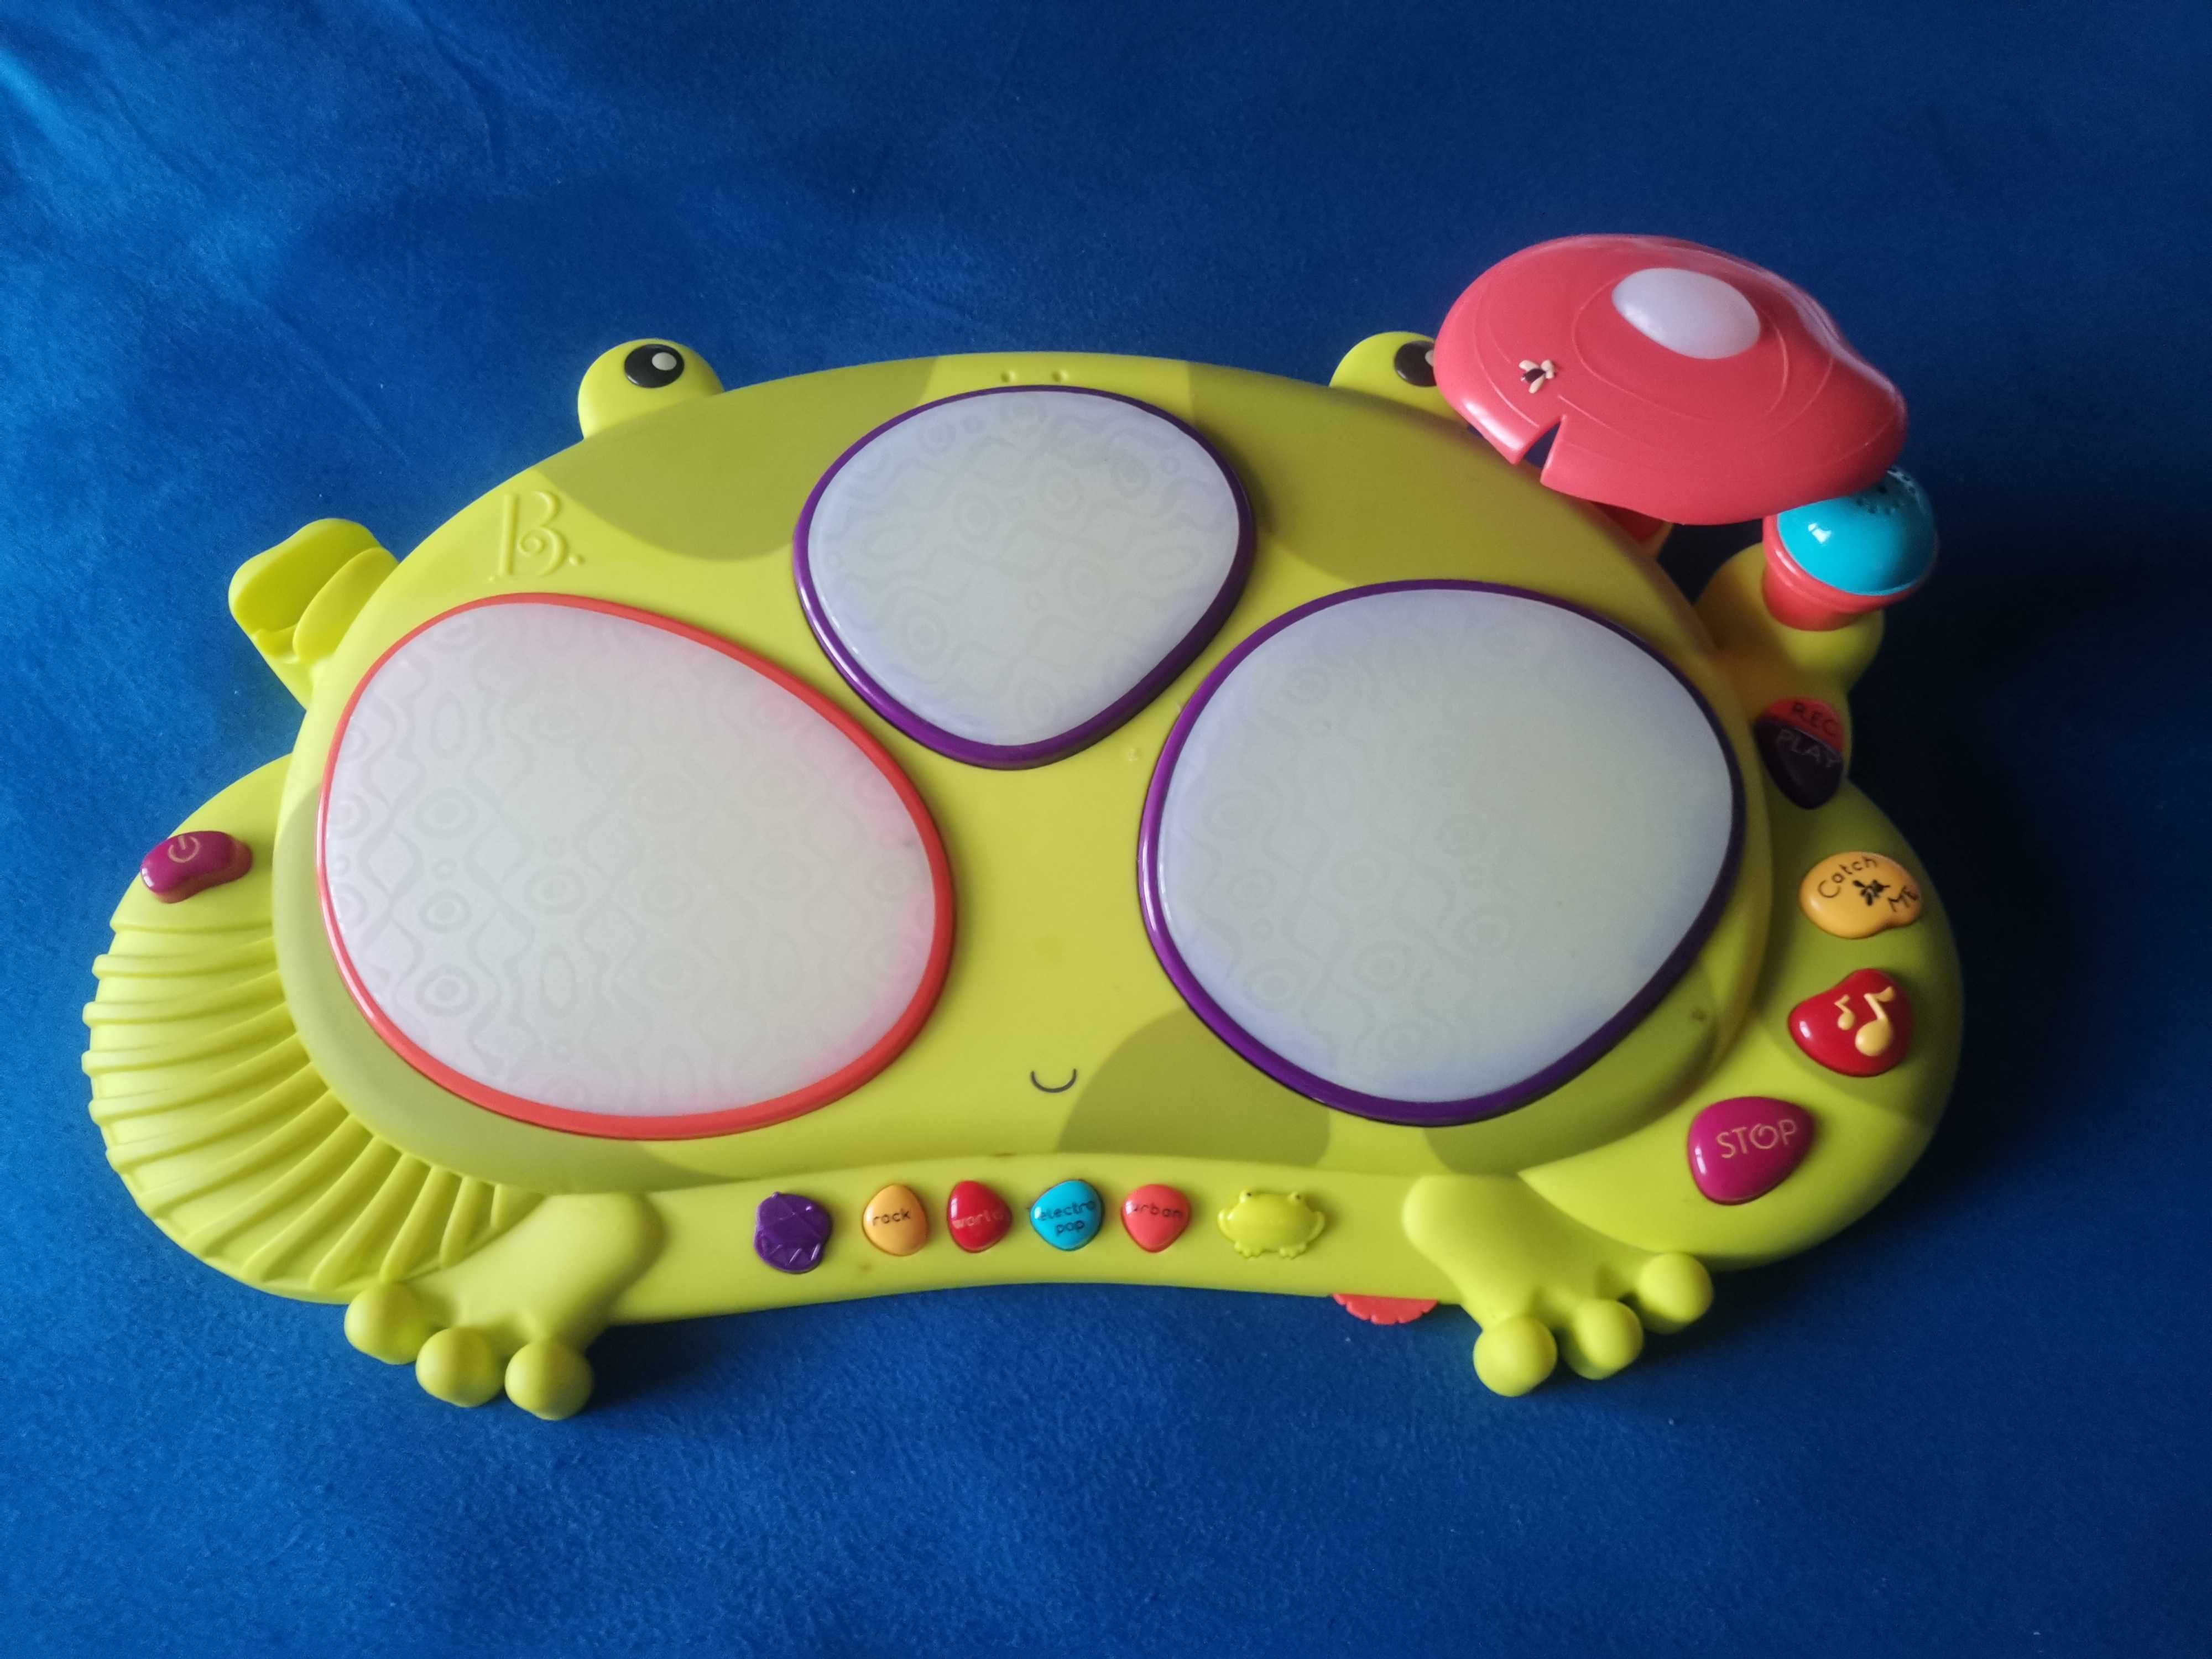 Perkusja B.toys dzięki żabky, zabawka interaktywna